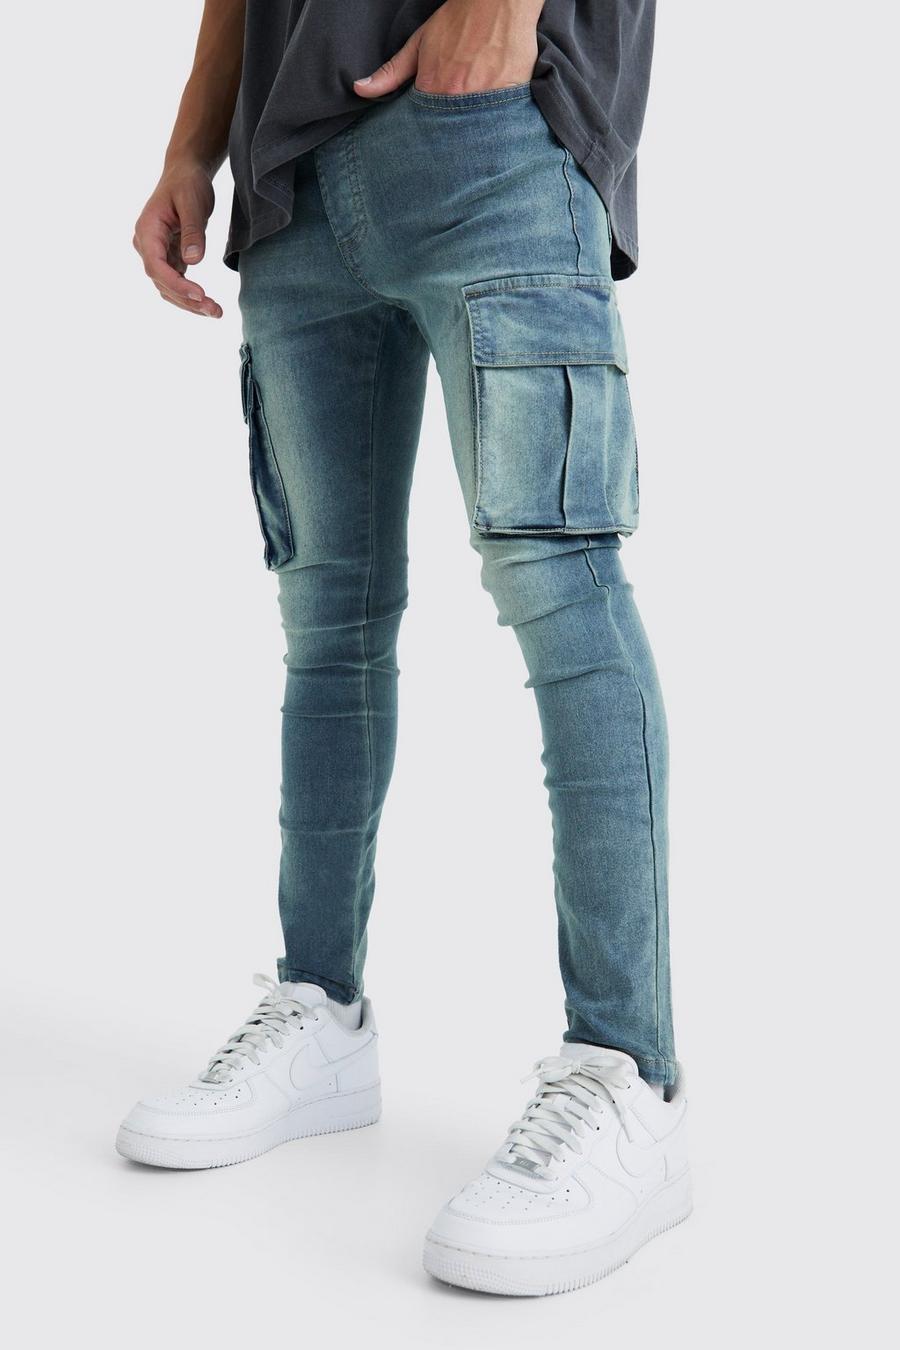 Fashion Men's Lace-up Waist Jeans Trendy Light Blue Cargo Pants